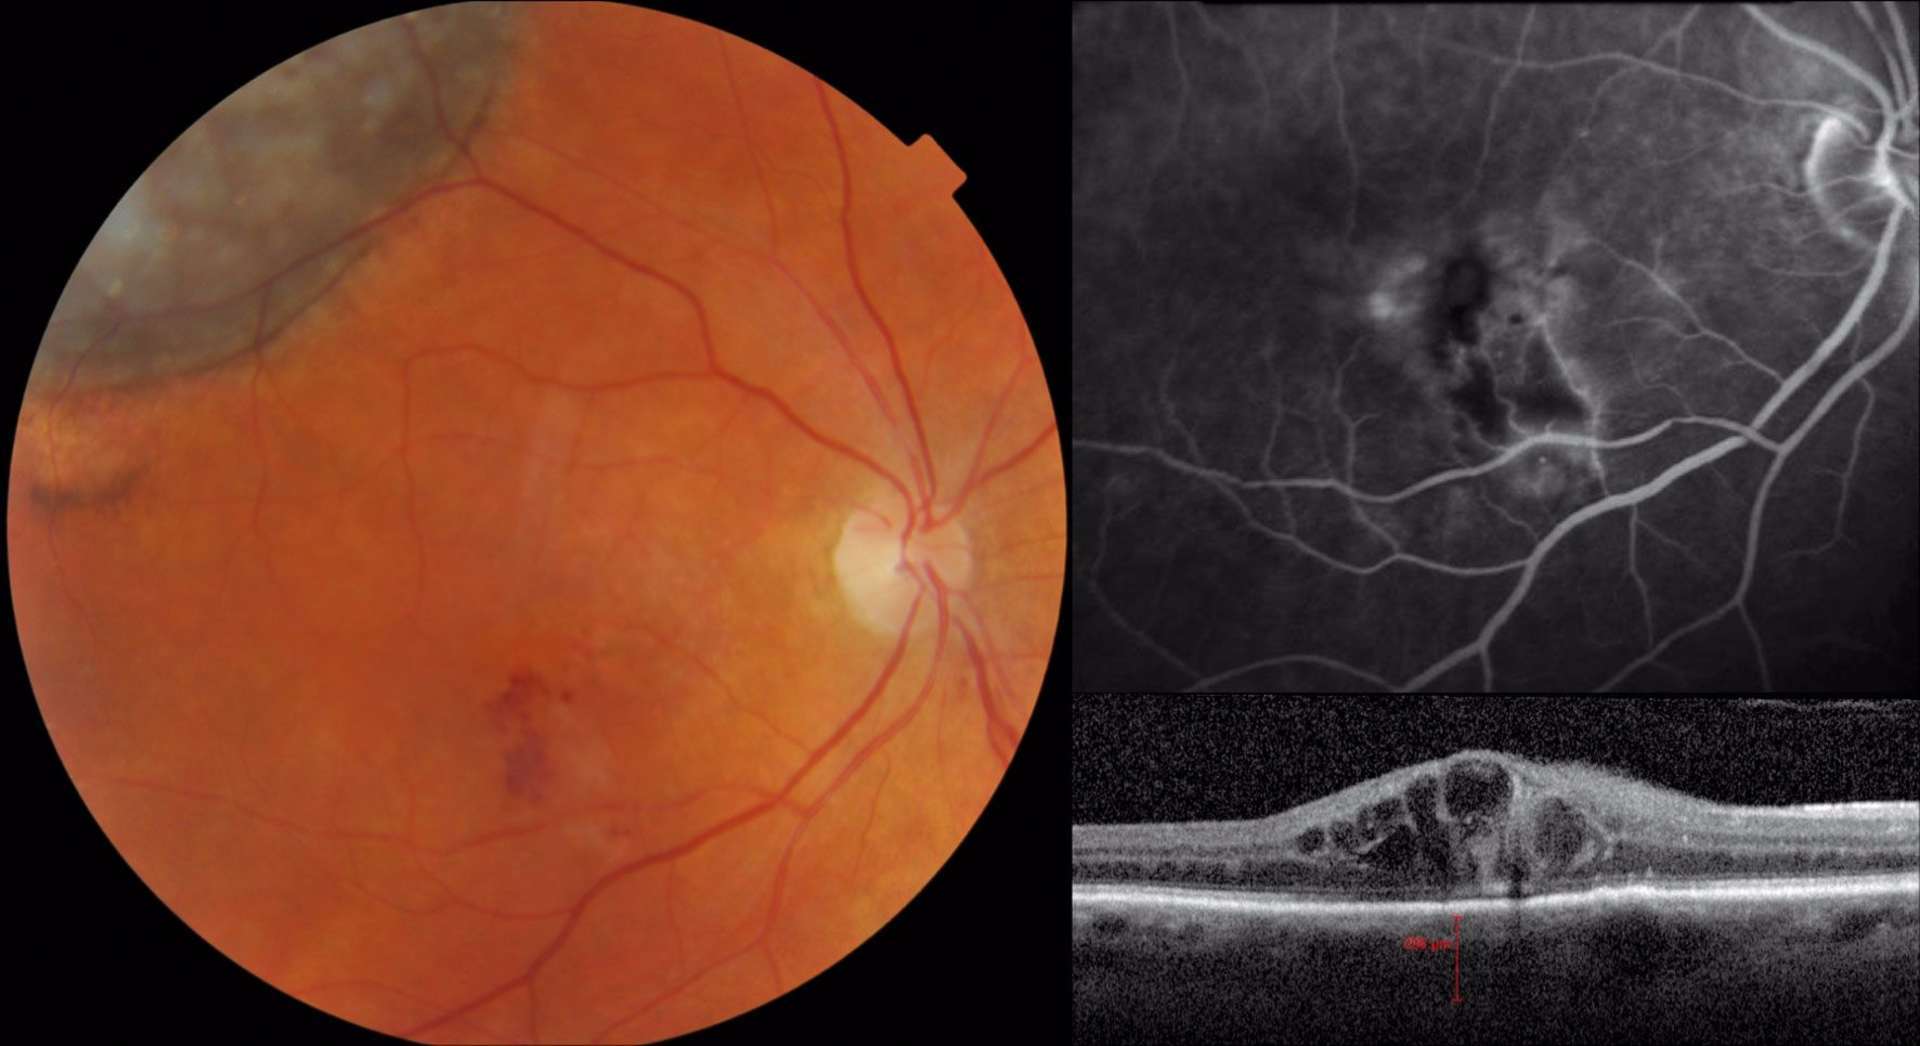 Patient présentant une maculopathie radique compliquant un mélanome choroïdien temporal supérieur de l’œil droit traité par protonthérapie. La rétinographie couleur montre des hémorragies rétiniennes en temporal inférieur de la macula. L’angiographie met en évidence une occlusion veinulaire ischémique. L’OCT confirme la présence d’un œdème maculaire
